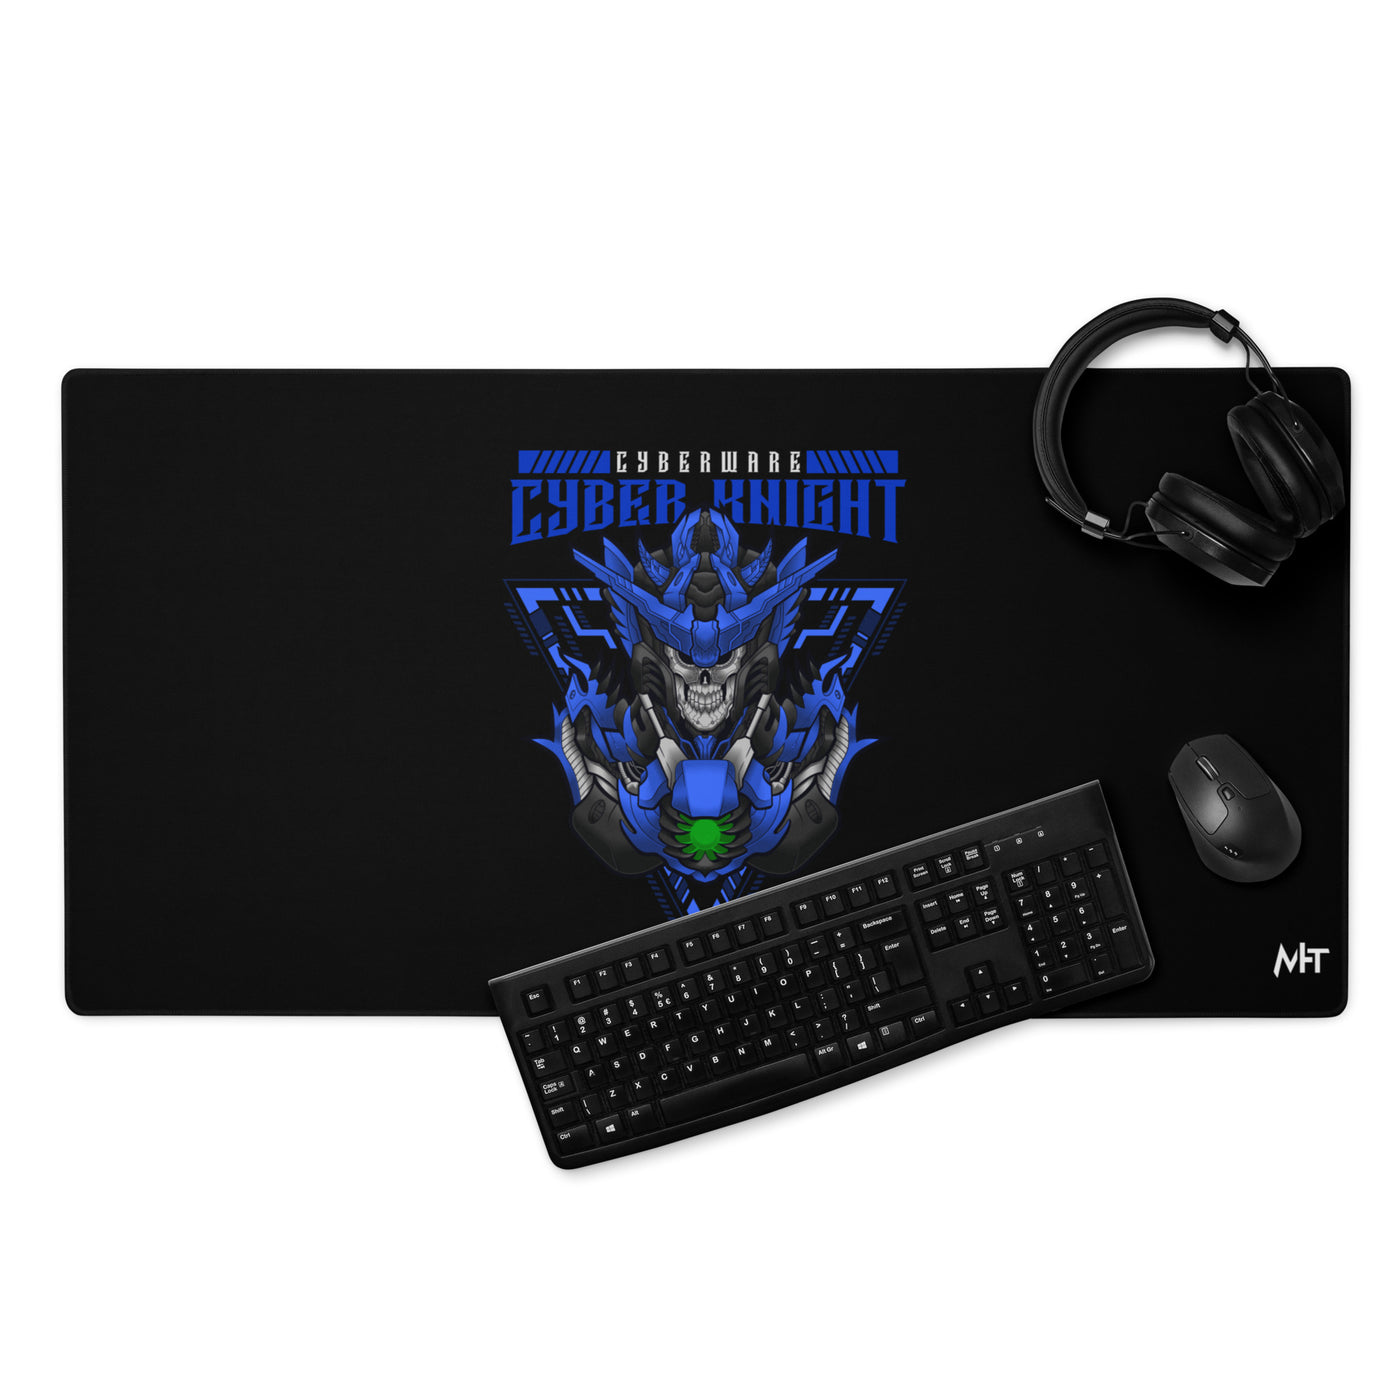 CyberWare Cyber knight - Desk Mat